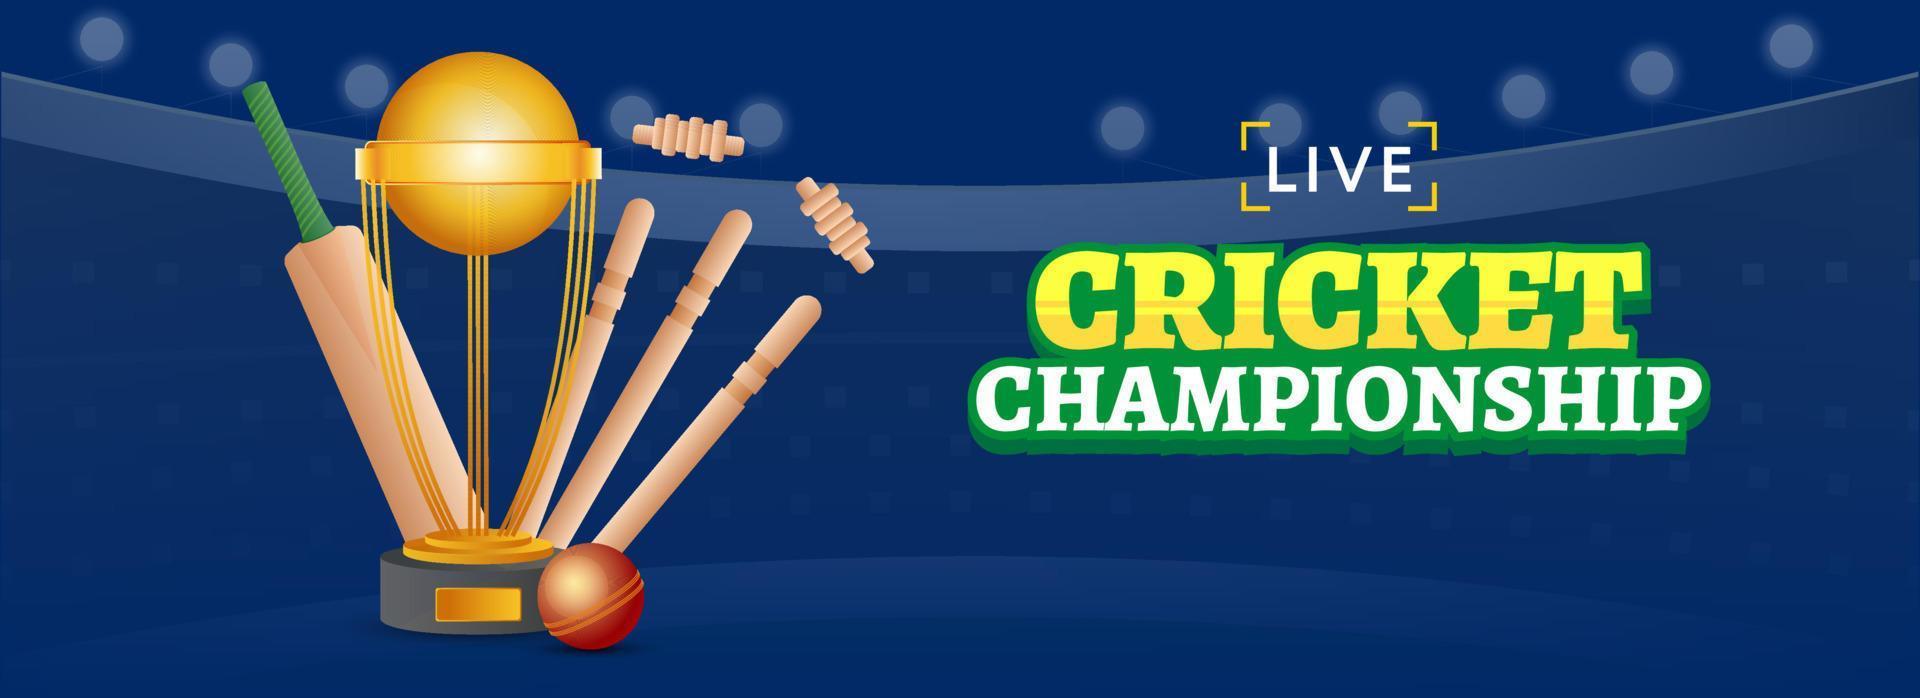 vivere cricket campionato intestazione o bandiera design con realistico sfera, pipistrello, wickets e trofeo tazza su blu sfondo. vettore